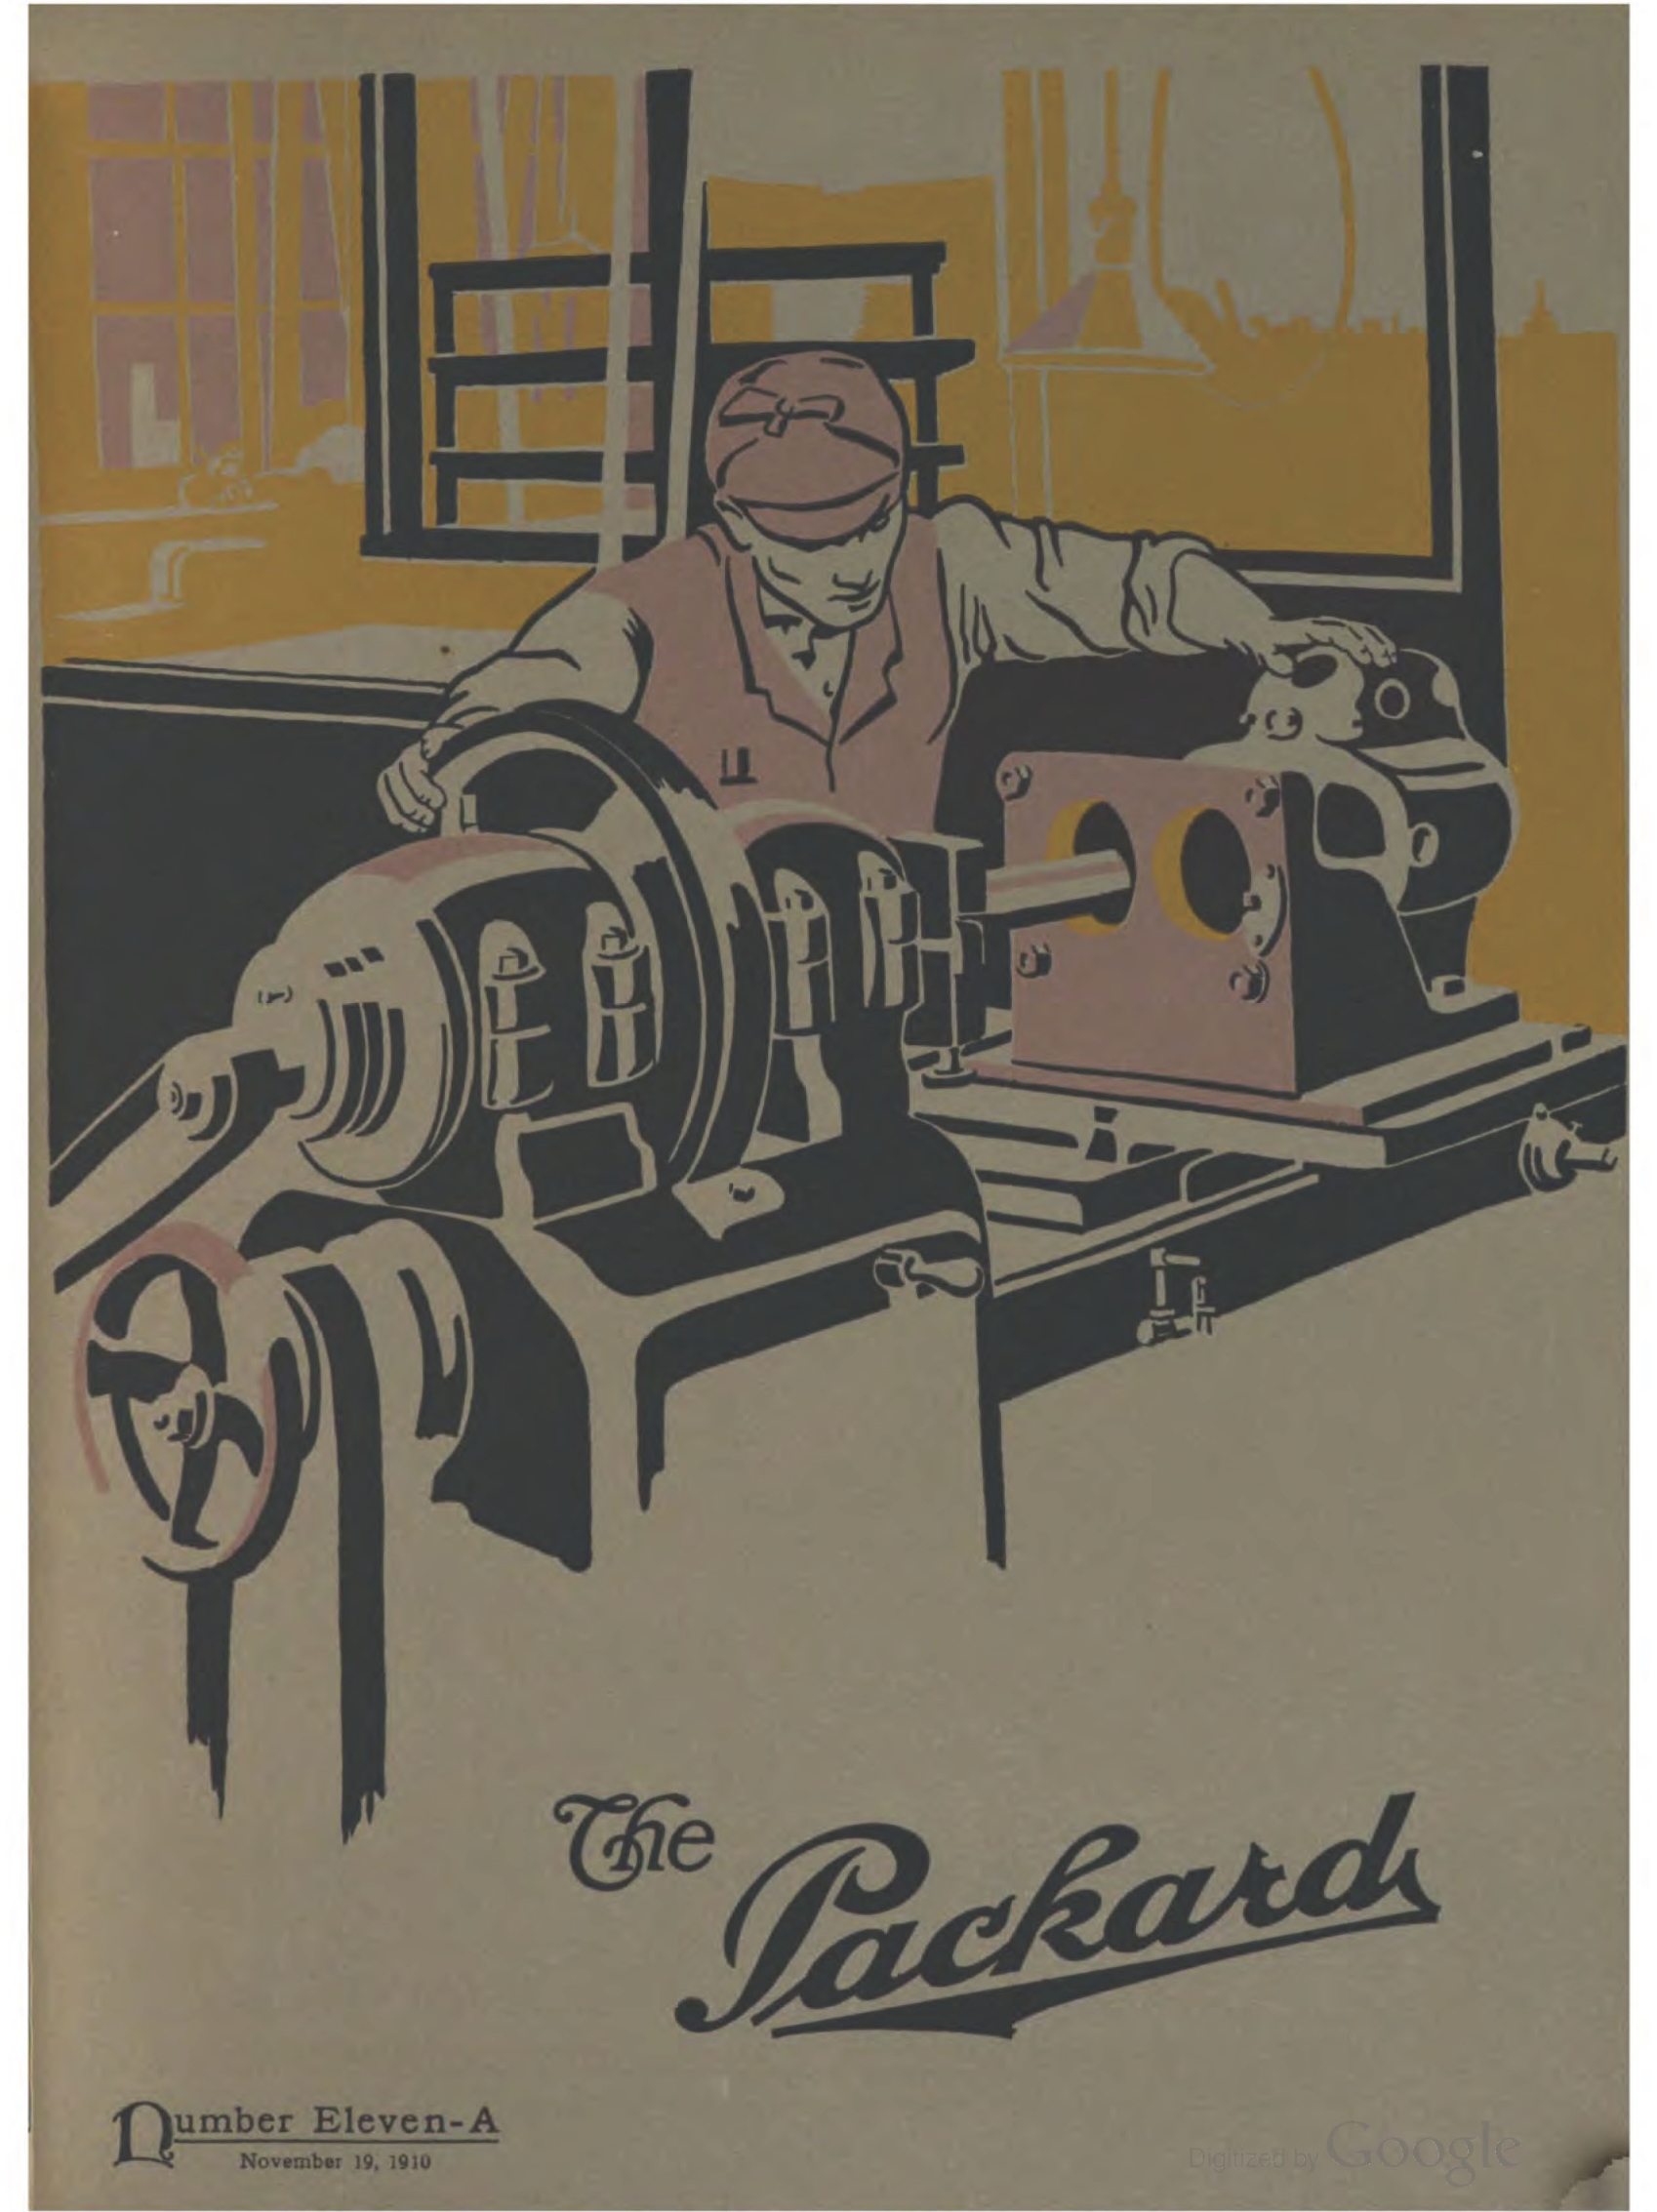 1910_The_Packard_Newsletter-213